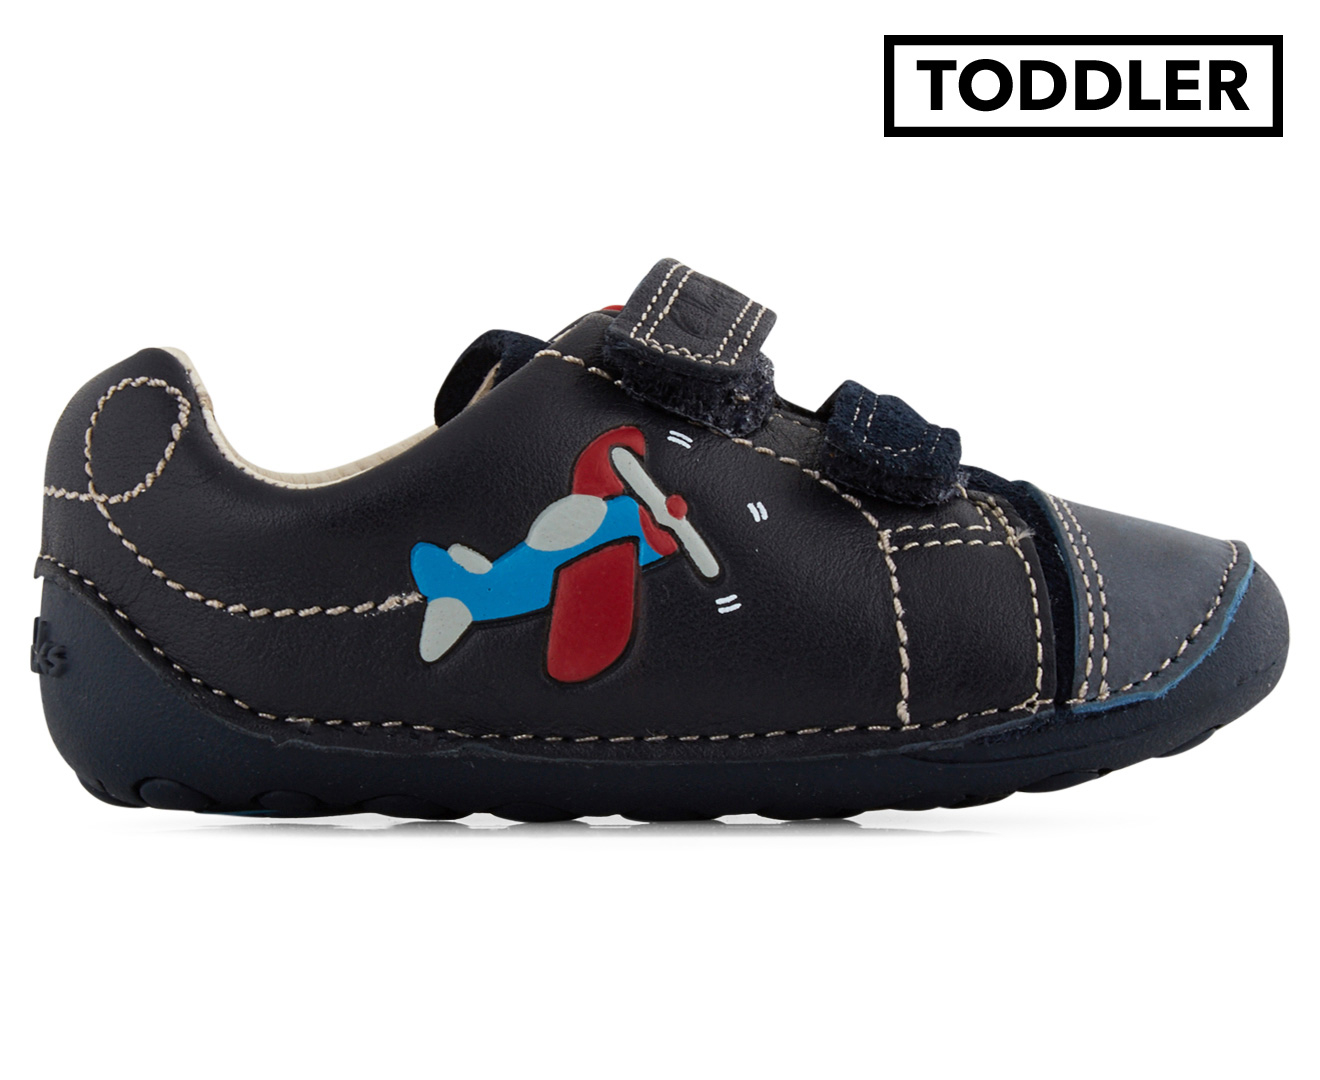 Clarks Toddler Tiny Jet Shoe - Navy Blue